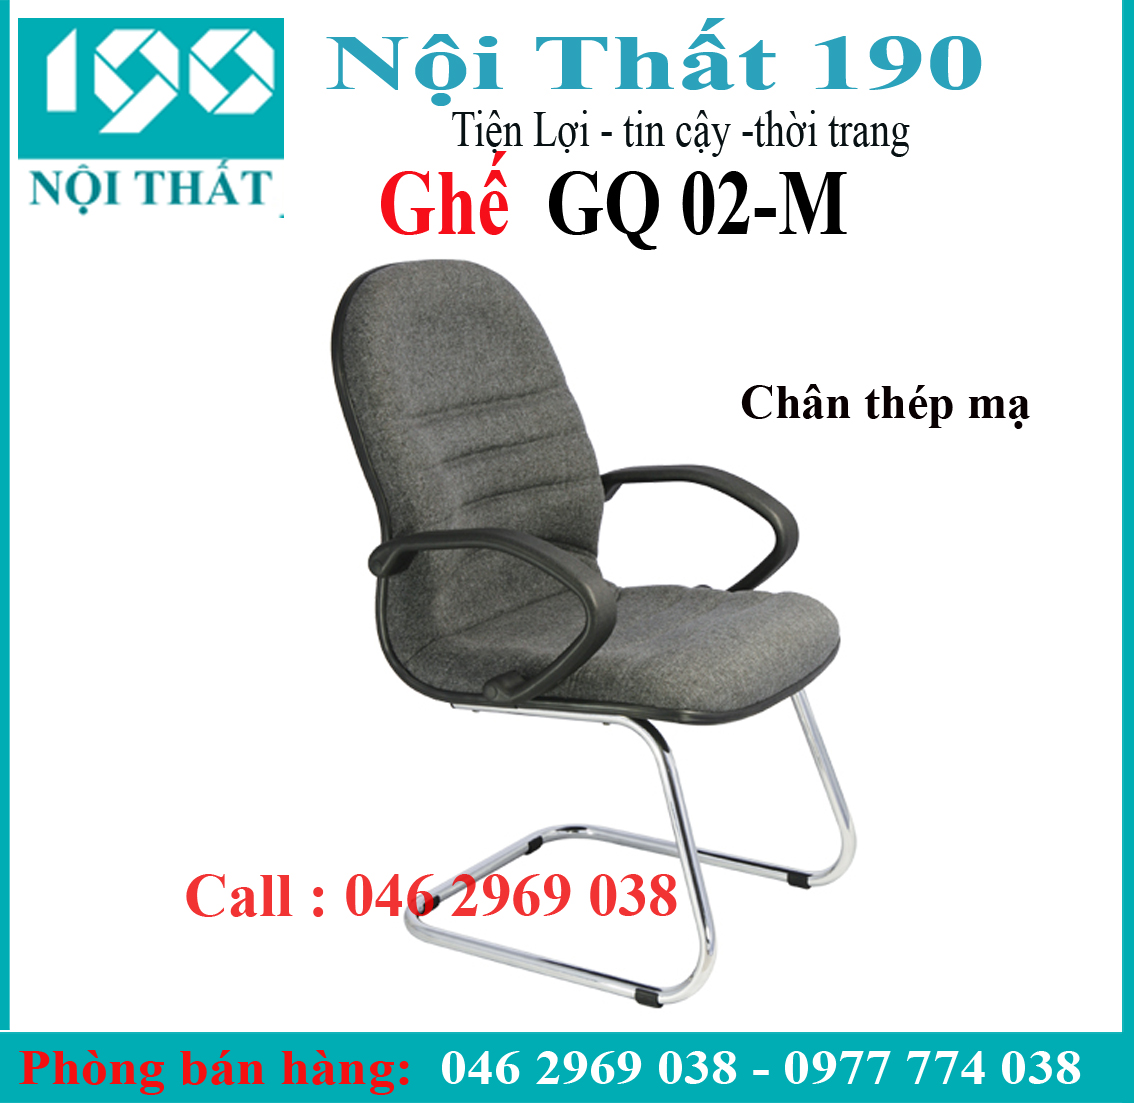 Ghế chân quỳ GQ02-M